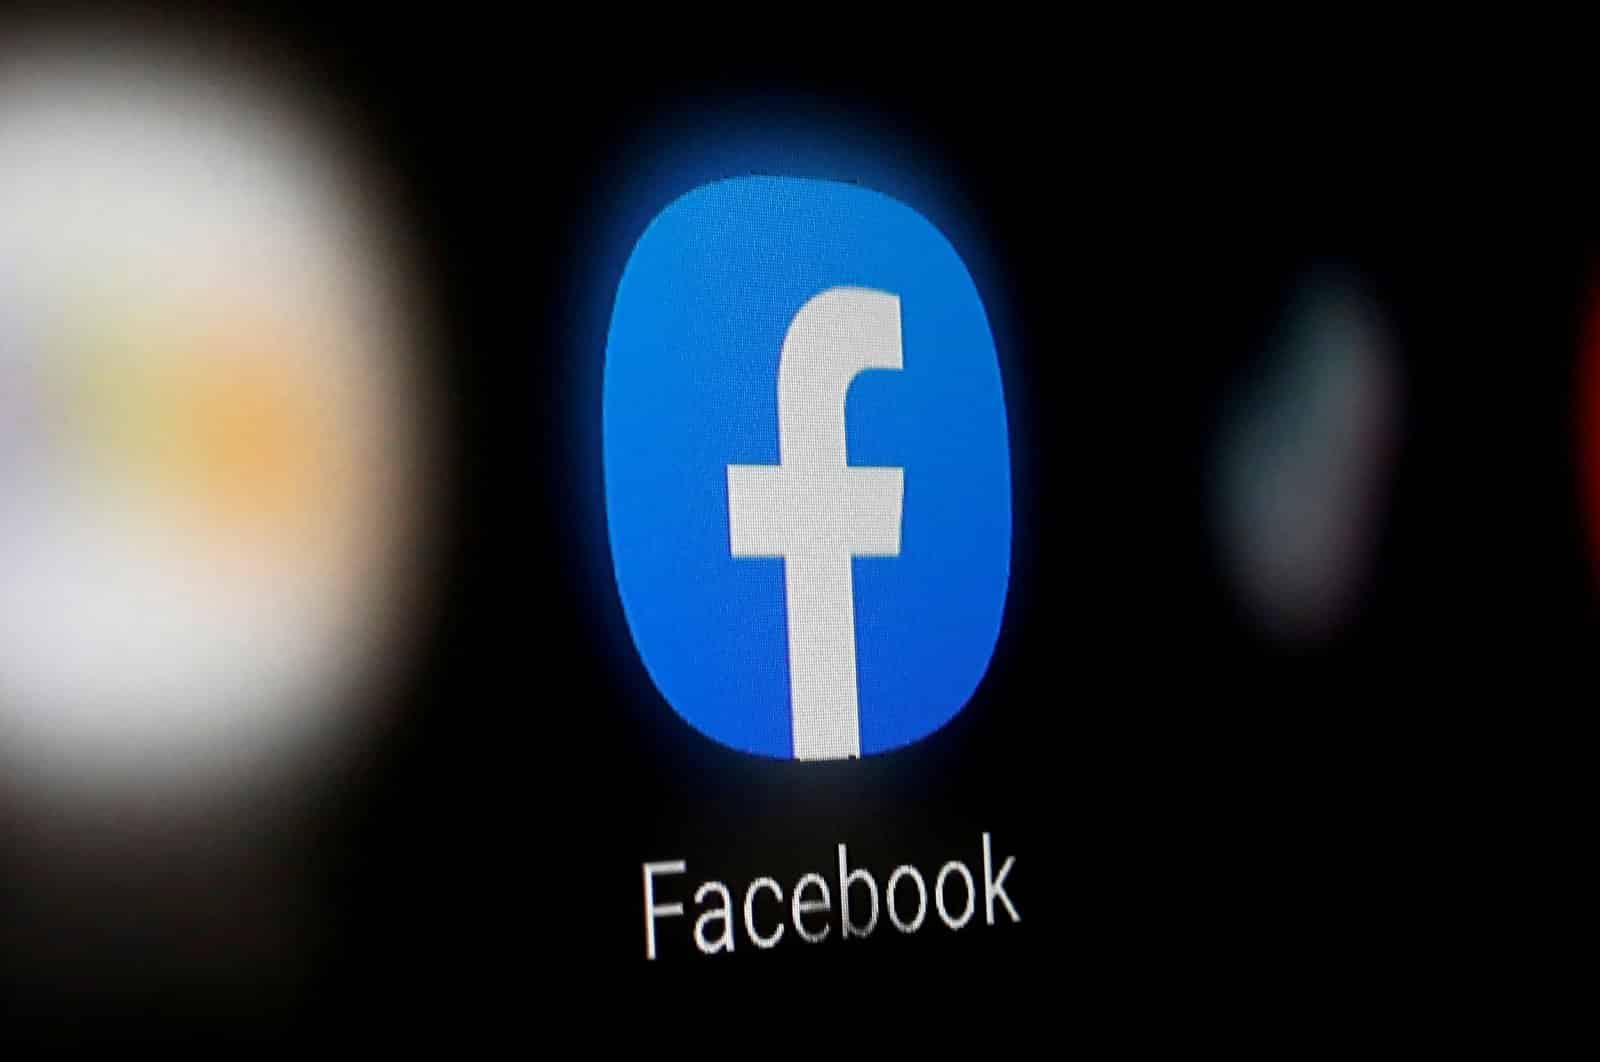 فيسبوك تخفي الصفحات التي تشارك معلومات مضللة